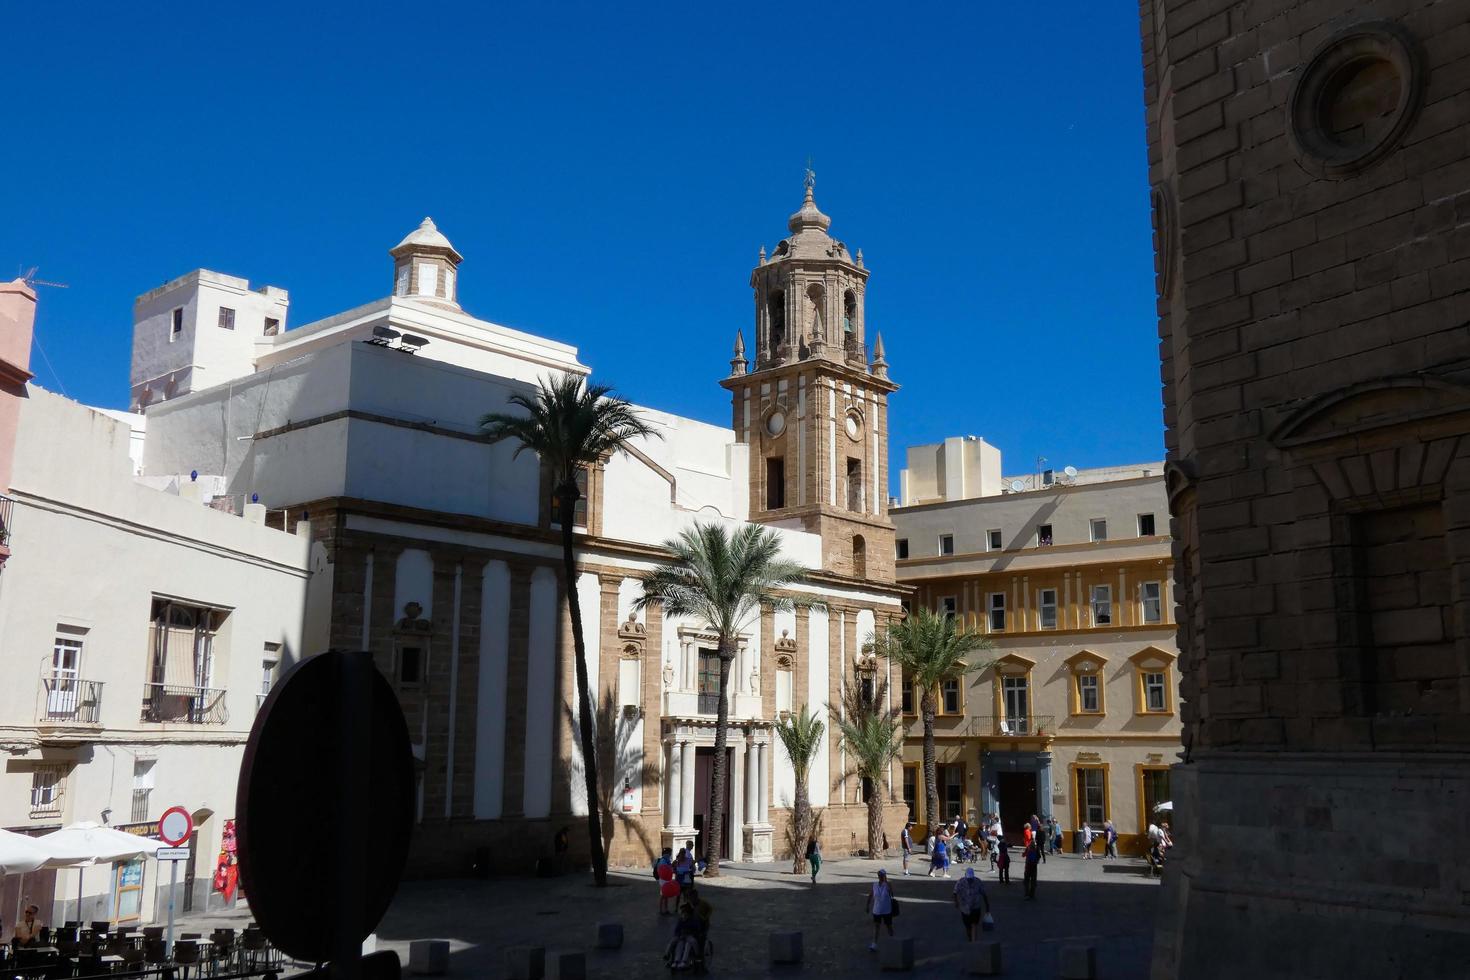 el centro urbano e histórico de cádiz, calles estrechas, monumentos e iglesias. foto